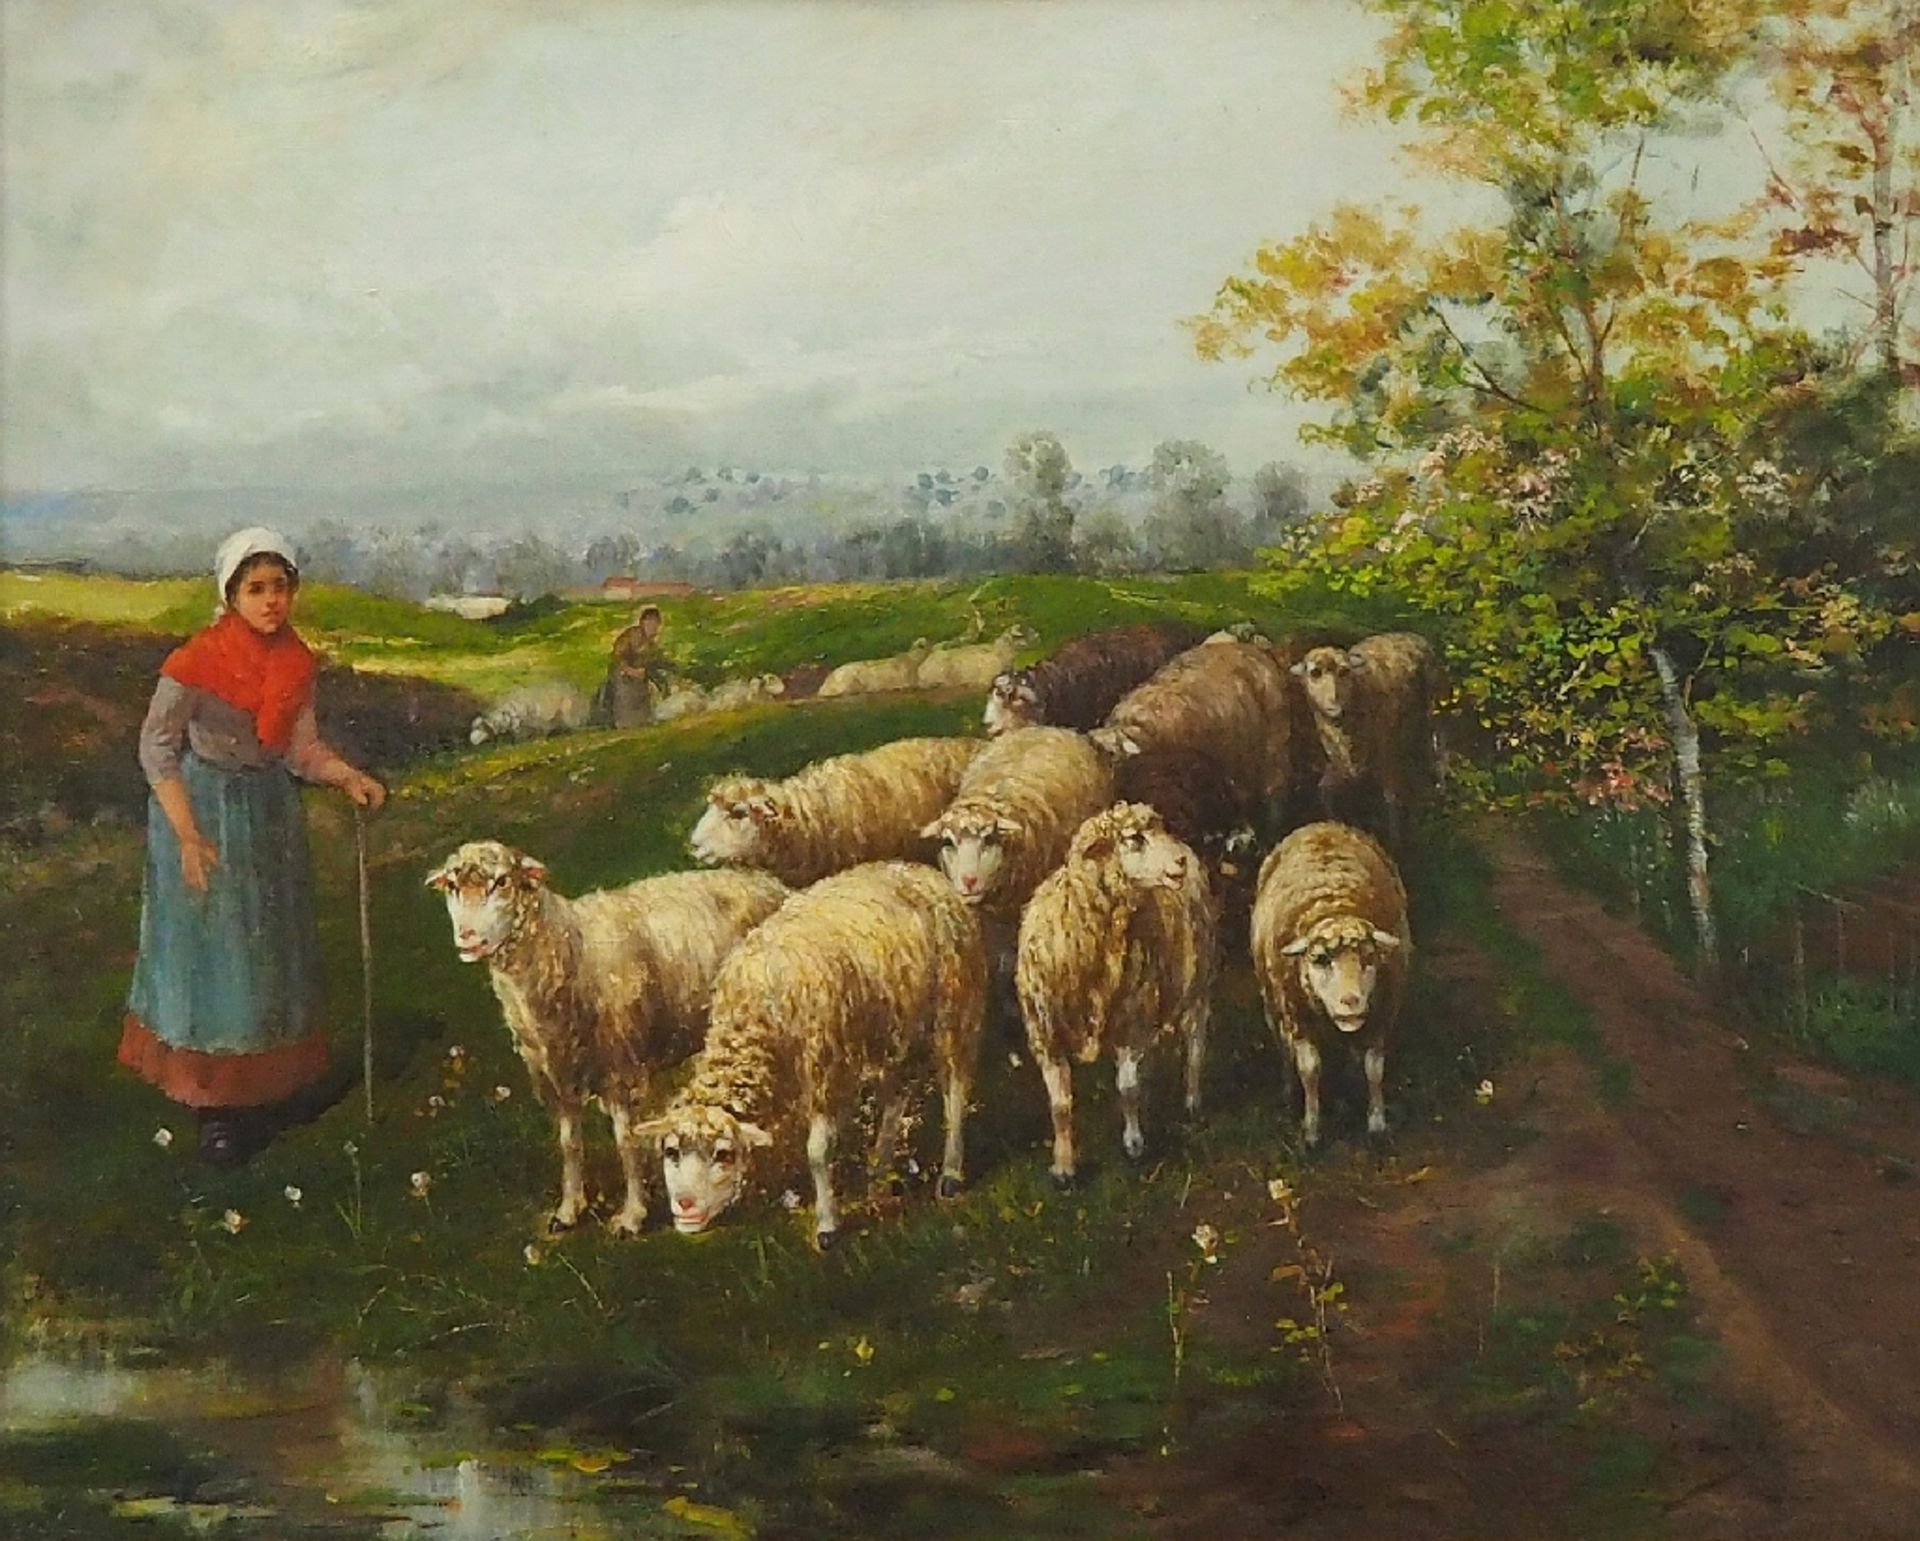 JARDINES, José Maria, 1862 Cadiz - ca. 1914. Hirtin mit Schafherde auf der Weide in hügeliger Landsc